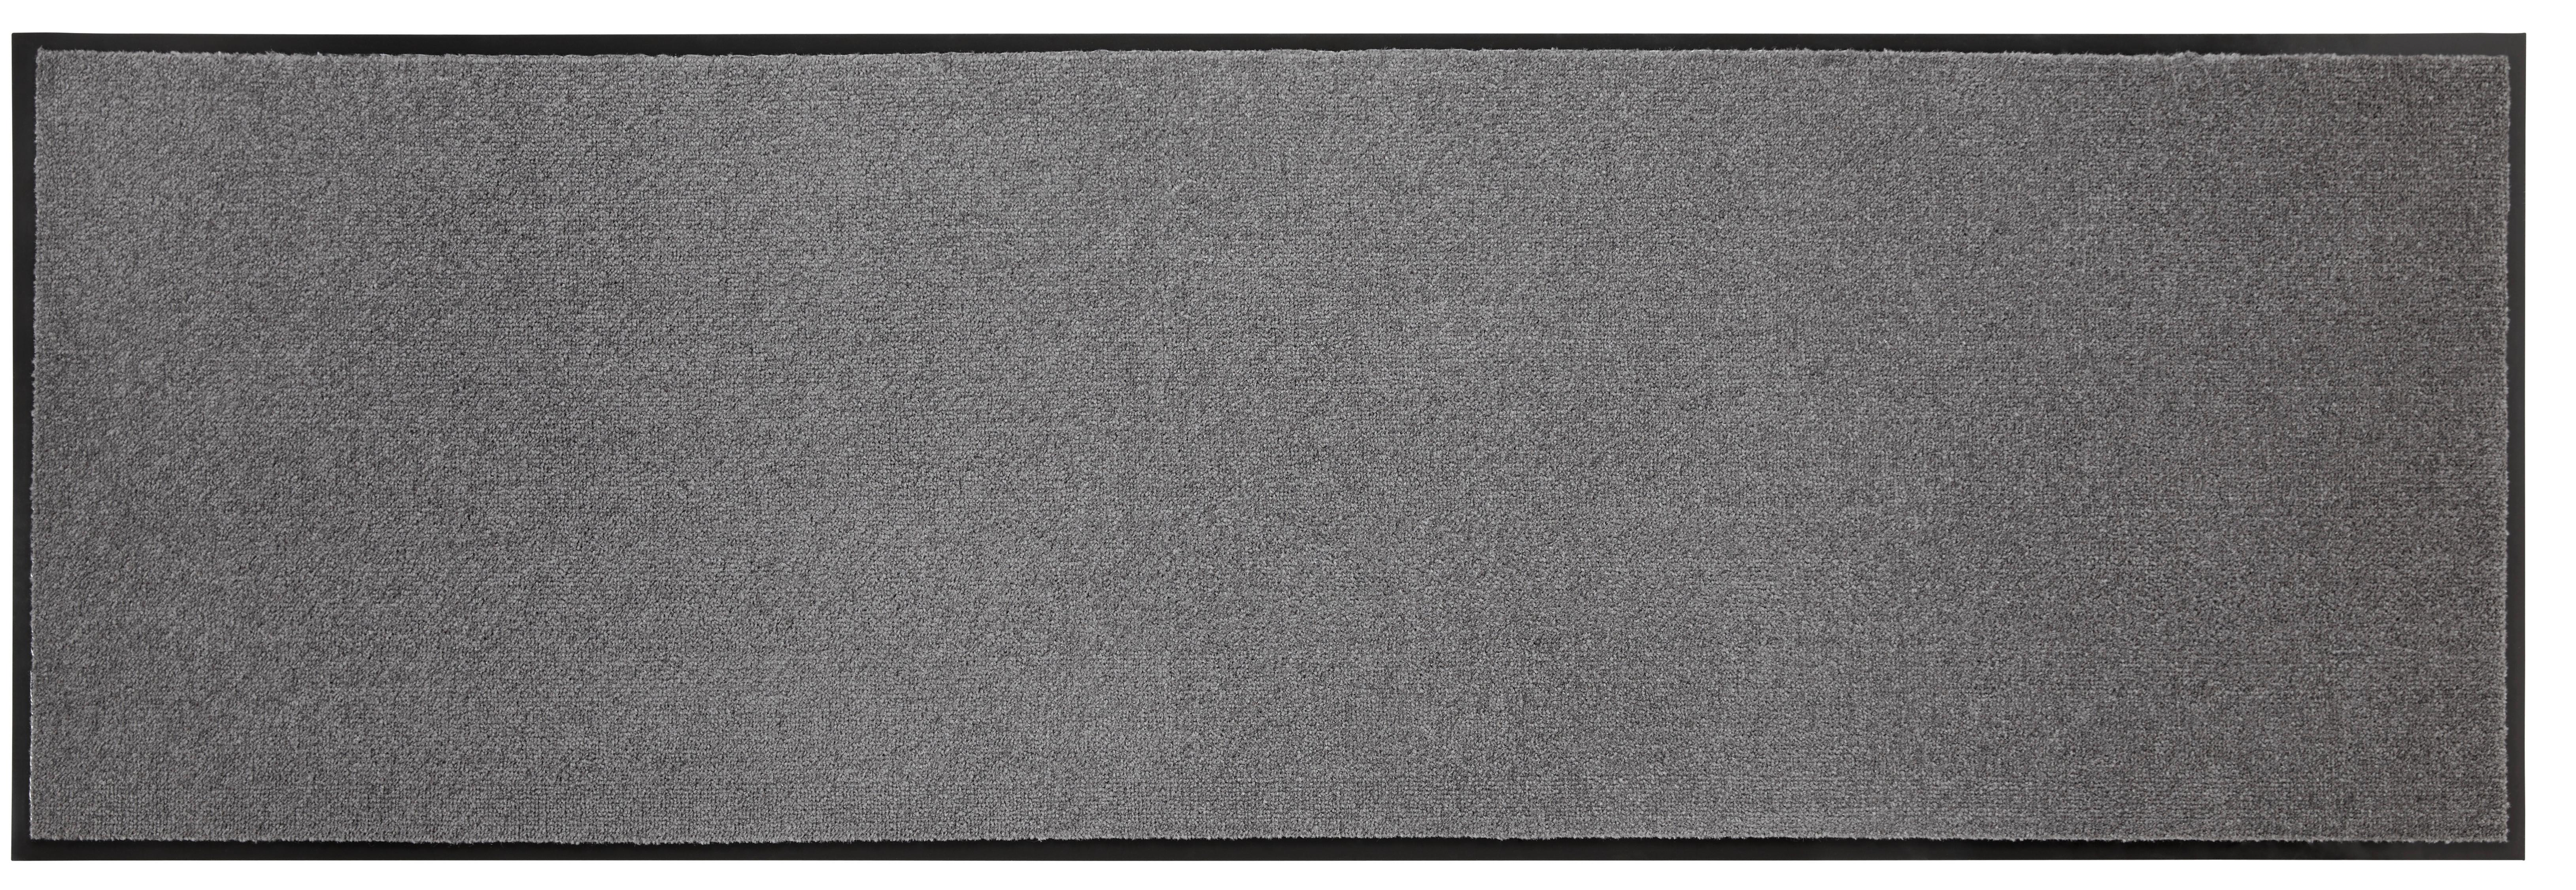 Fußmatte Eton in Anthrazit ca.60x180cm - Anthrazit, KONVENTIONELL, Textil (60/180cm) - Modern Living